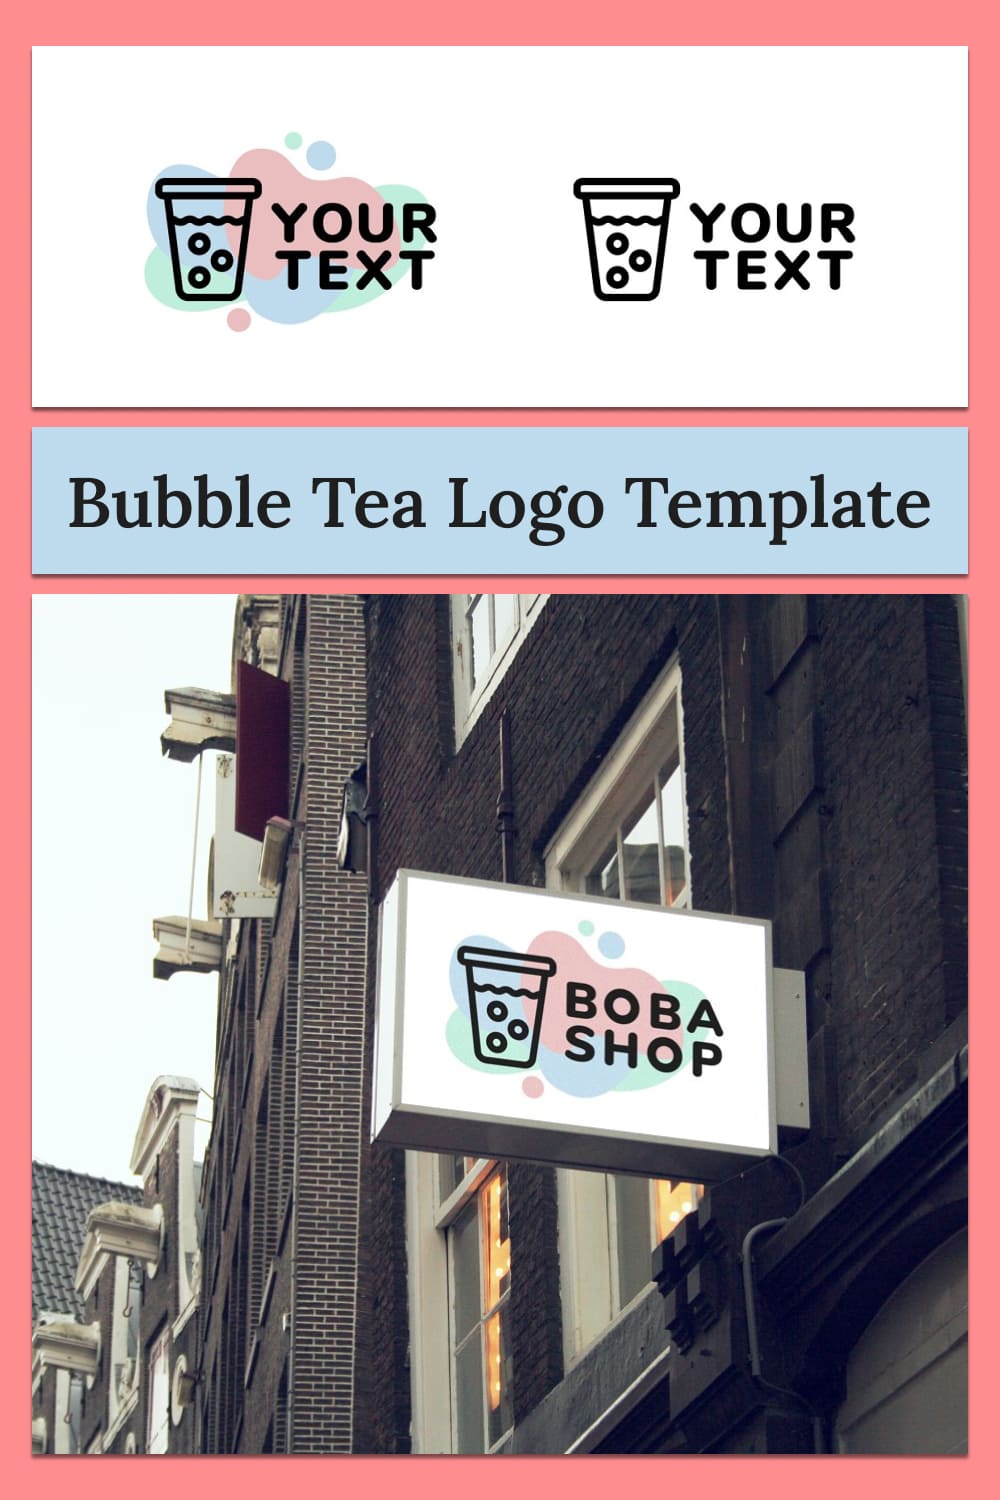 Bubble tea logo template - pinterest image preview.